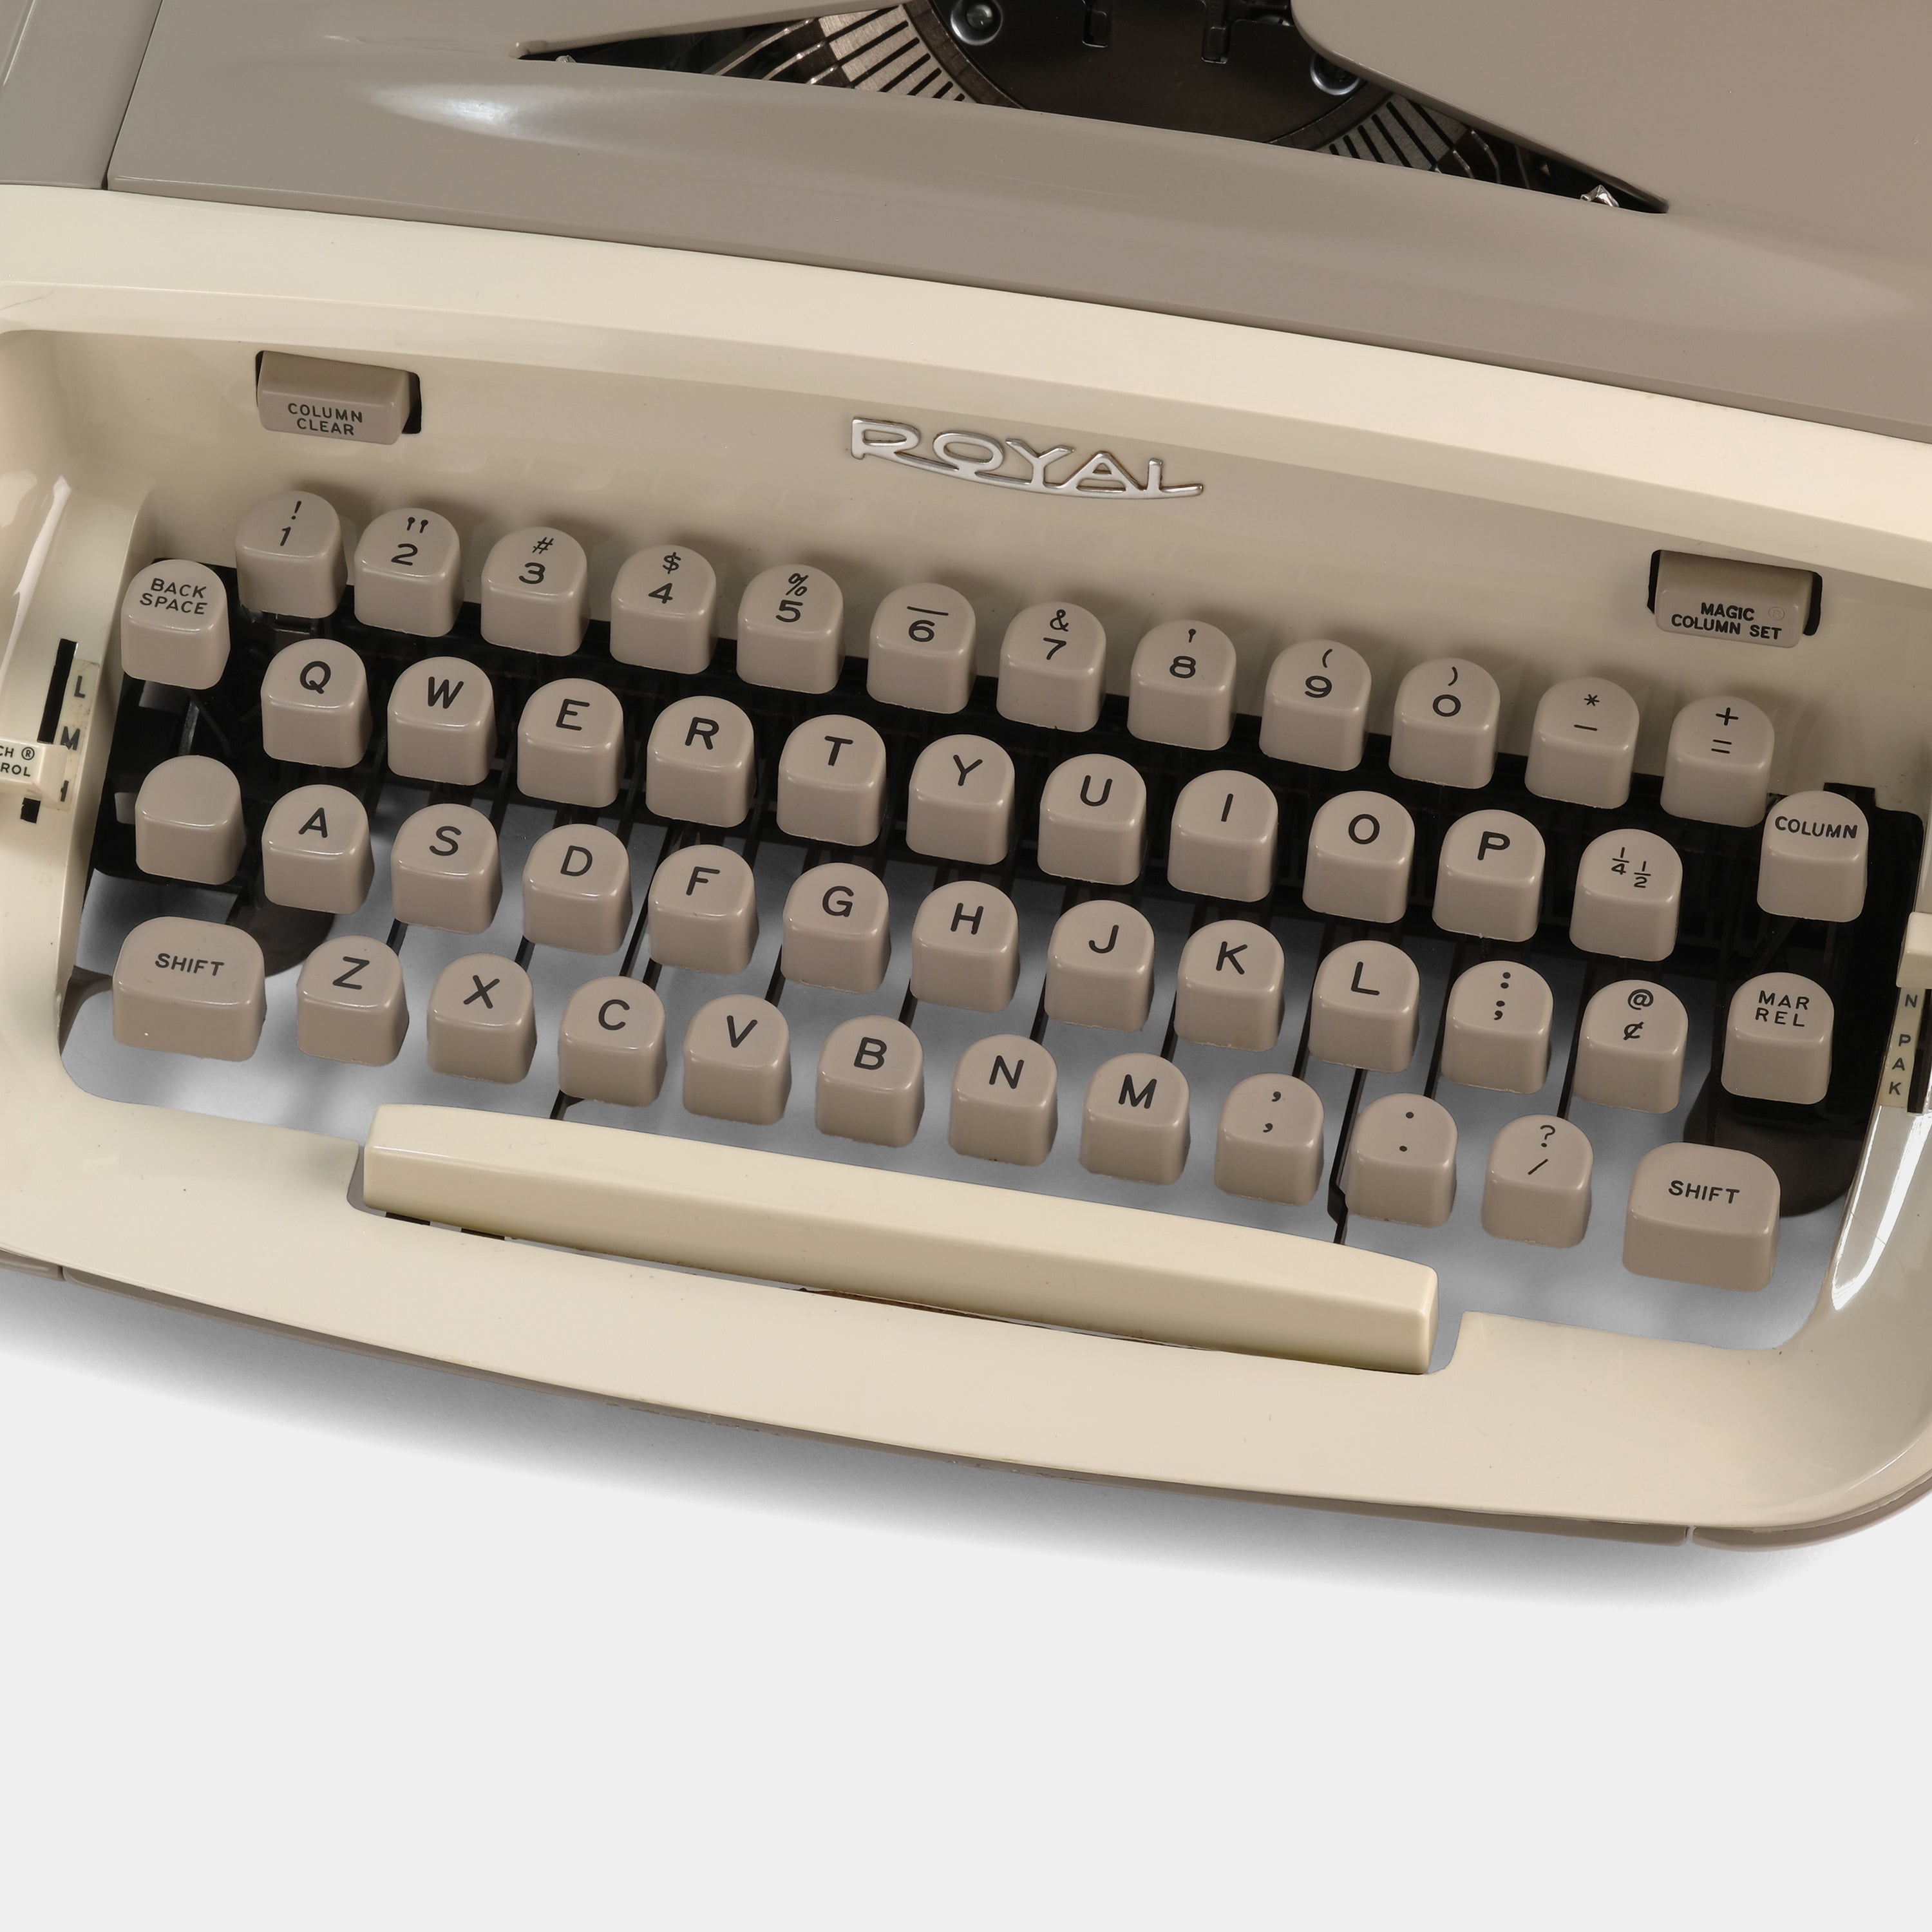 Royal Safari Tan Manual Typewriter and Case